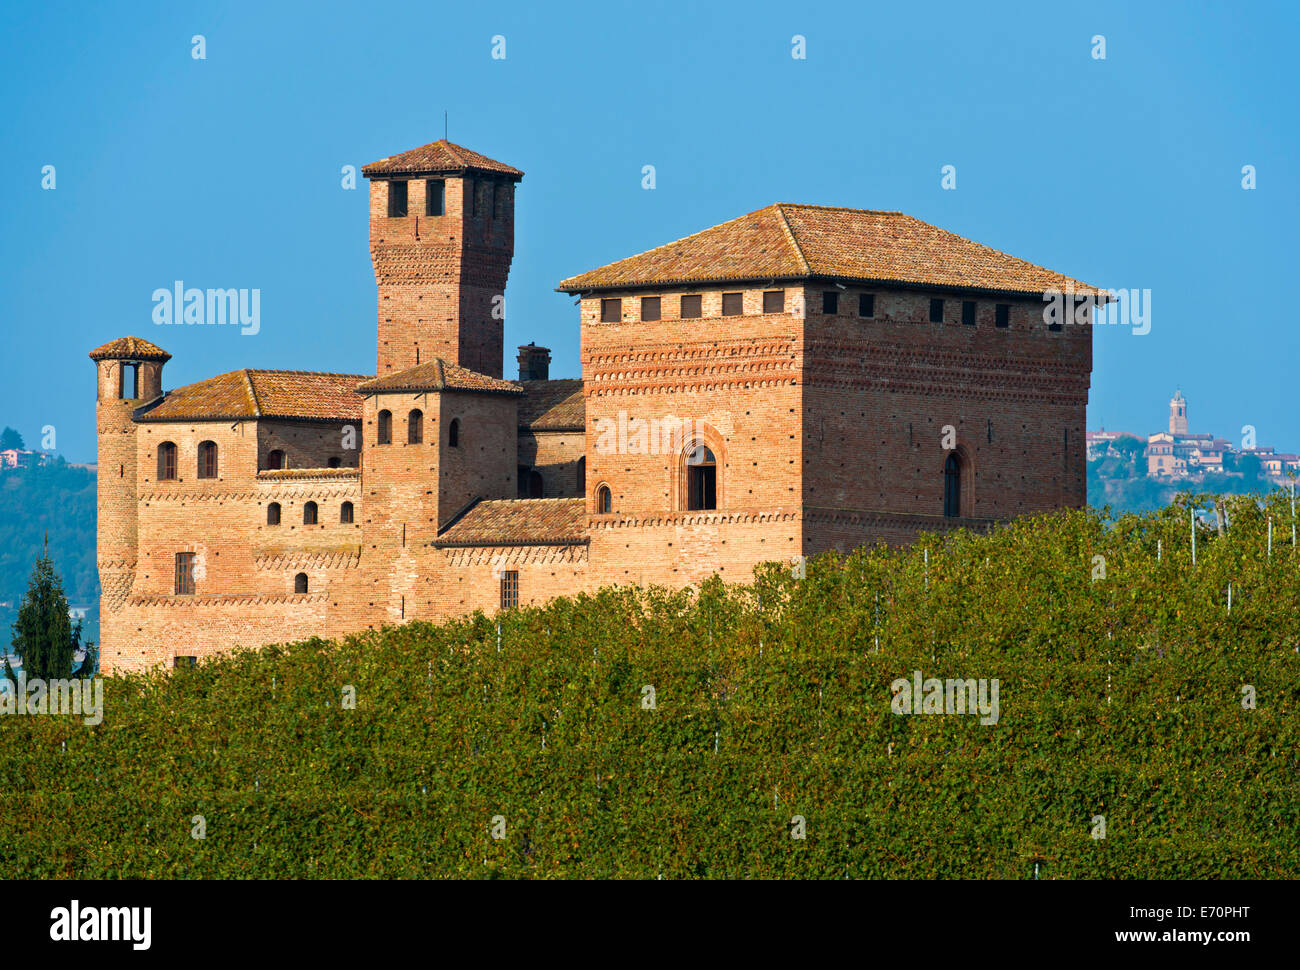 Castello di Grinzane Cavour, Grinzane Cavour, provincia di Cuneo, Piemonte, Italia Foto Stock